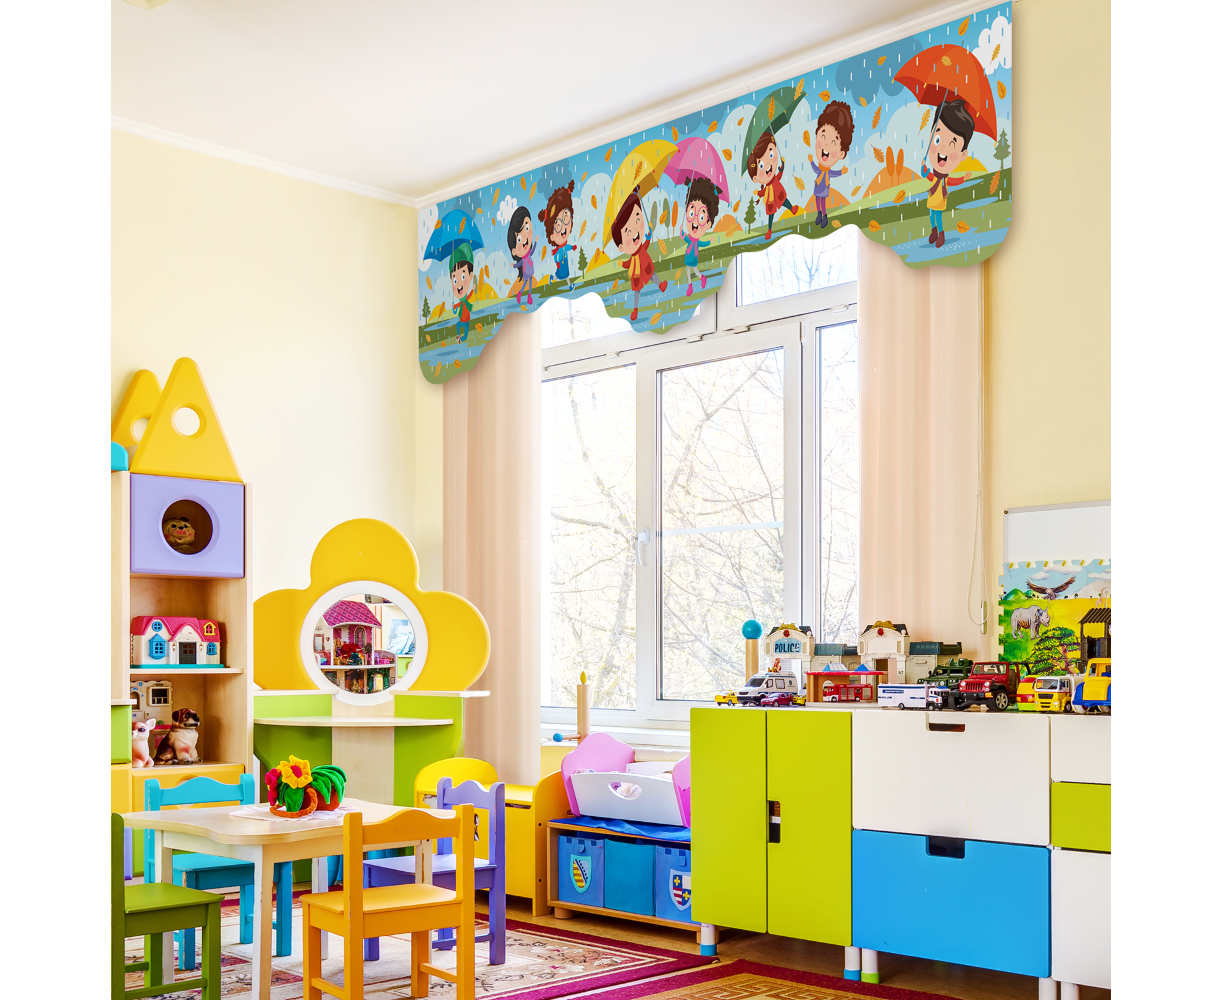 Ламбрекены для детской комнаты: фото самых очаровательных решений (21 фото)